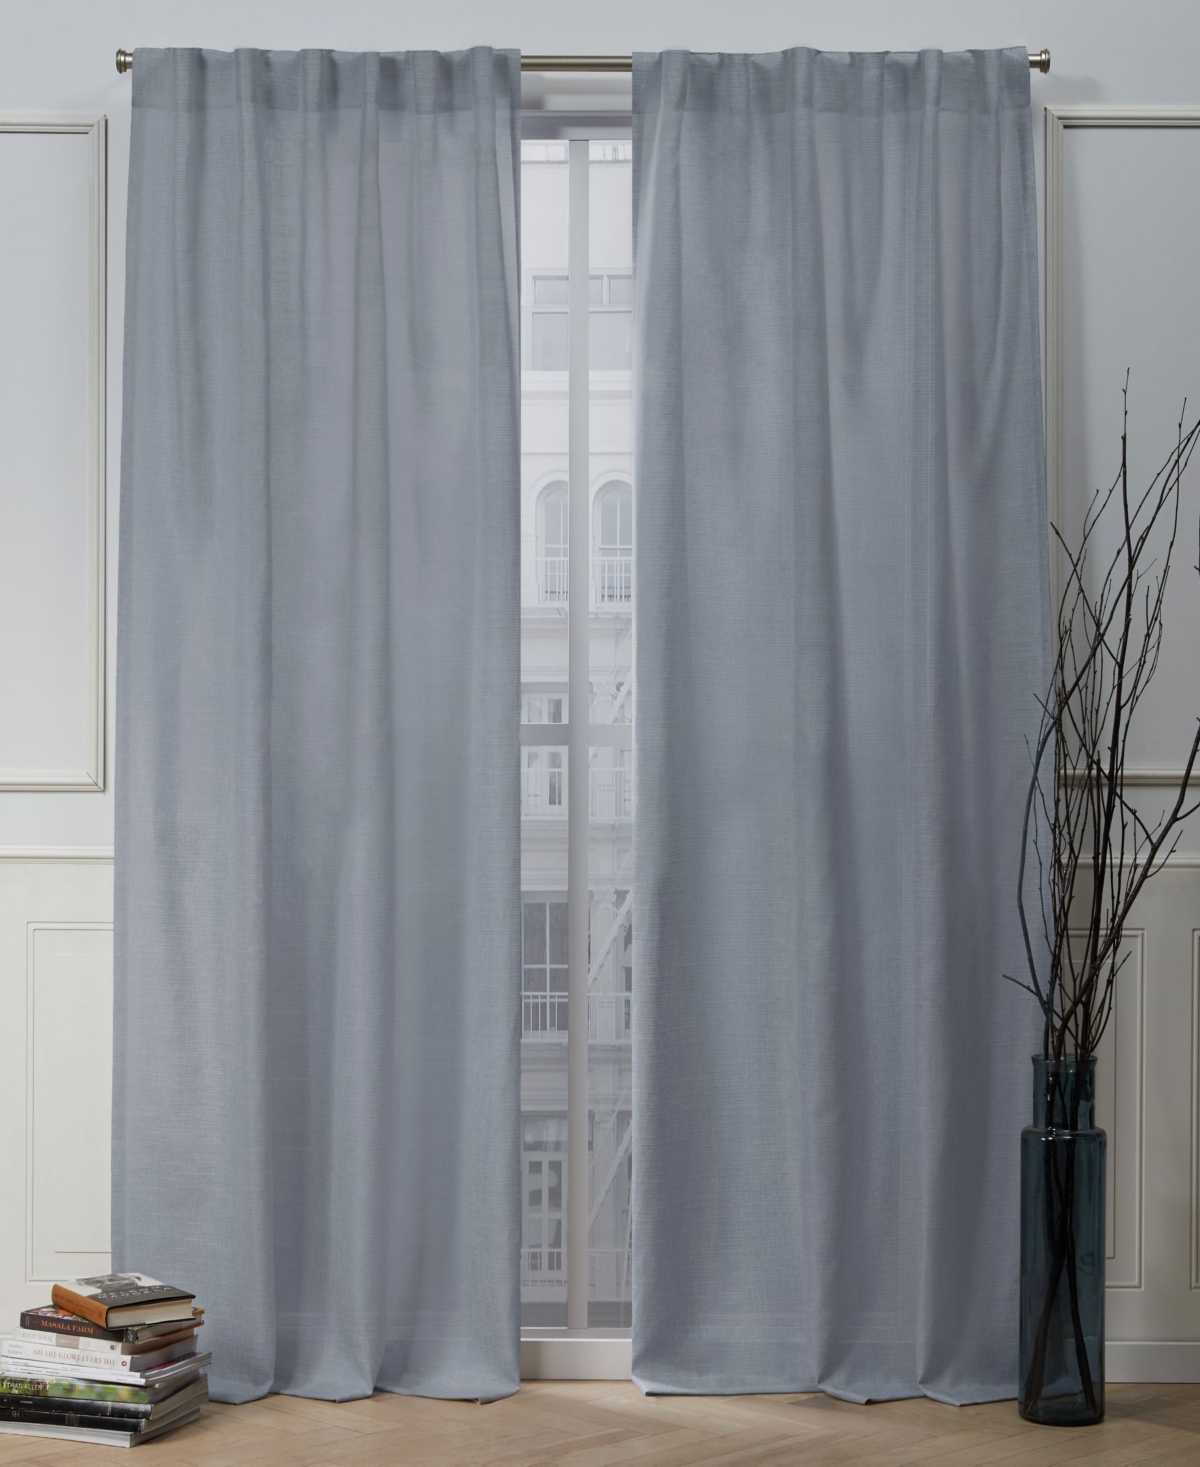 Faux Linen Slub Textured Hidden Tab Top 54" X 84" Curtain Panel Pair - Blue